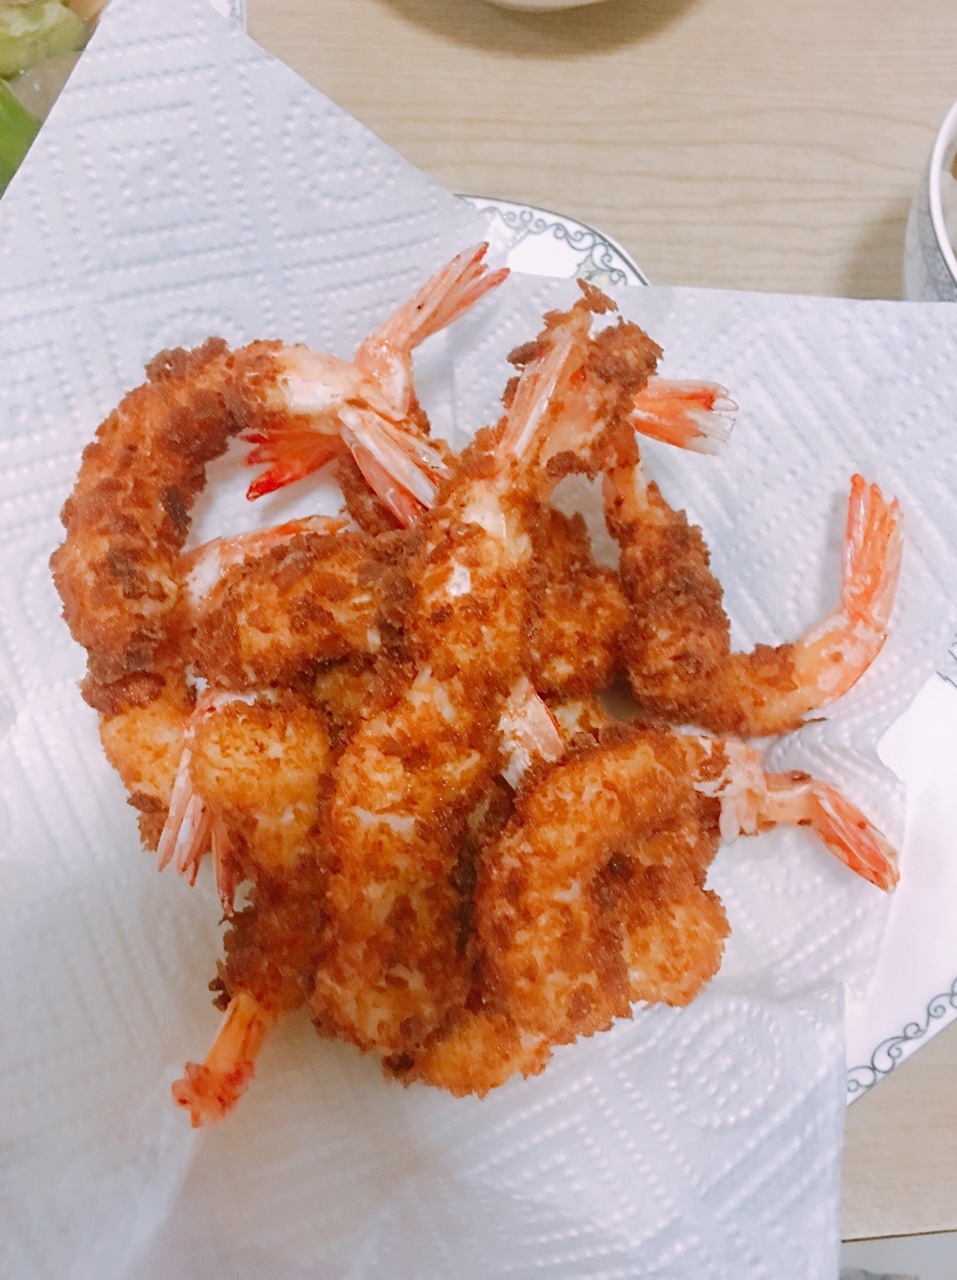 日式炸虾